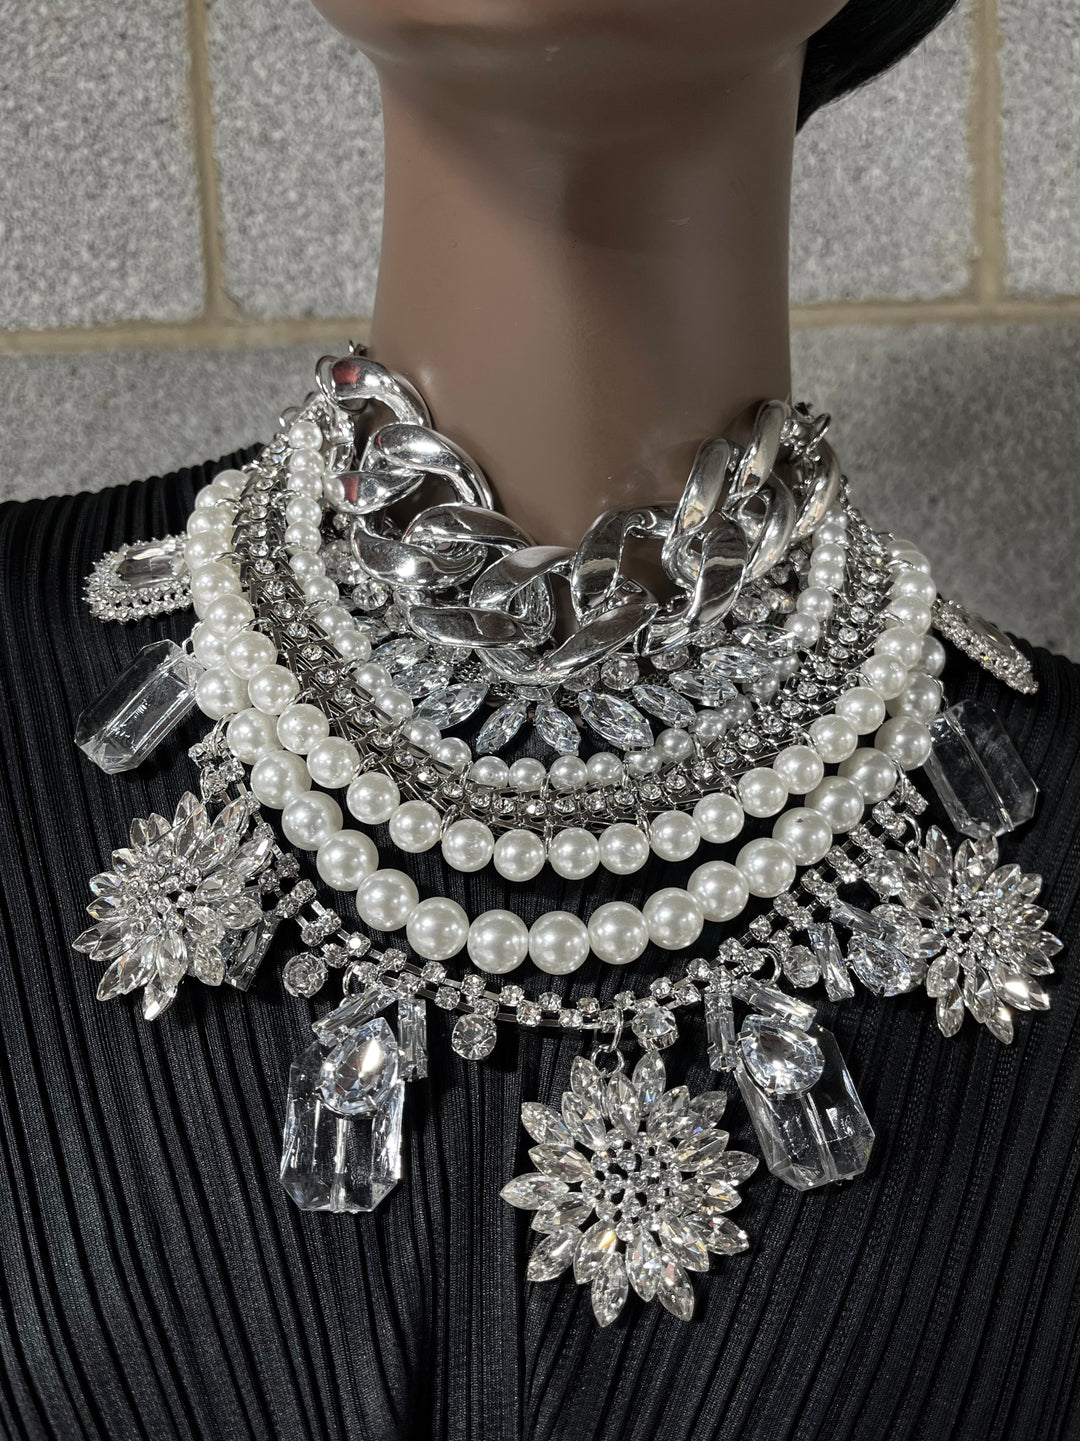 The Contessa necklace set